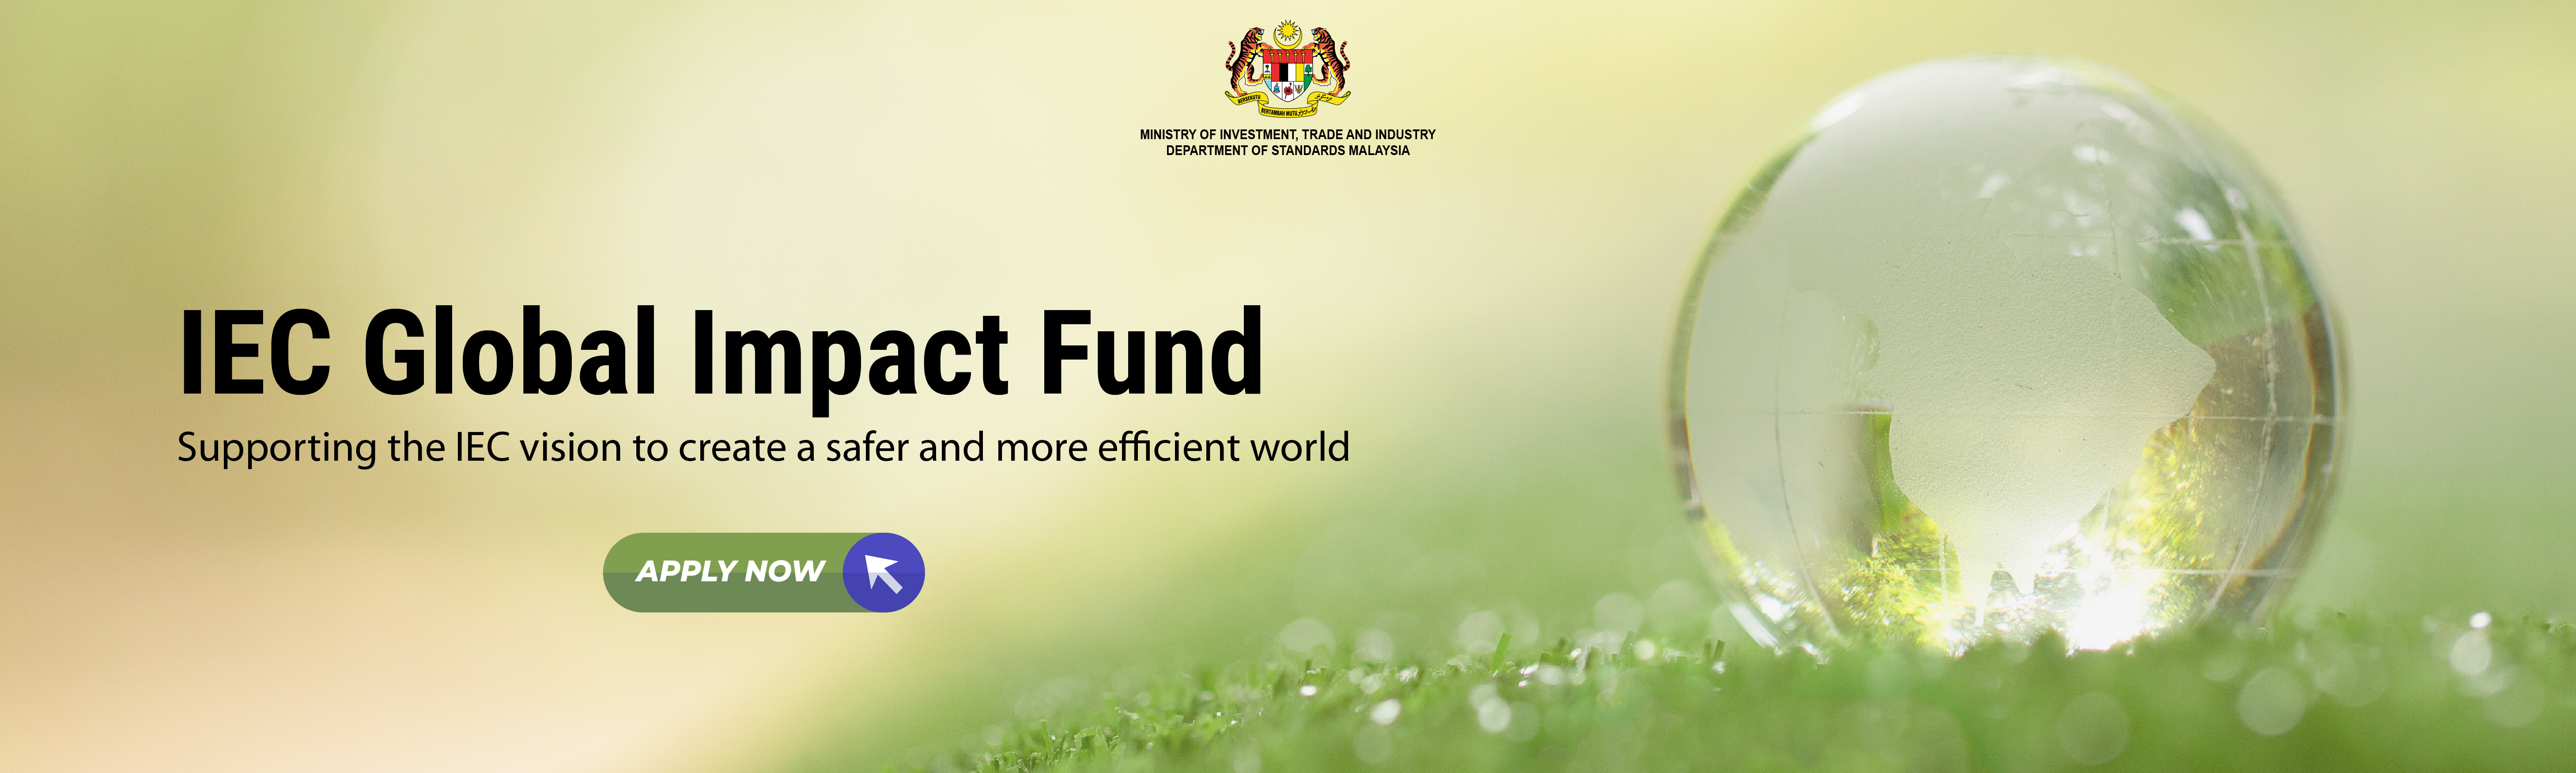 IEC Global Impact Fund